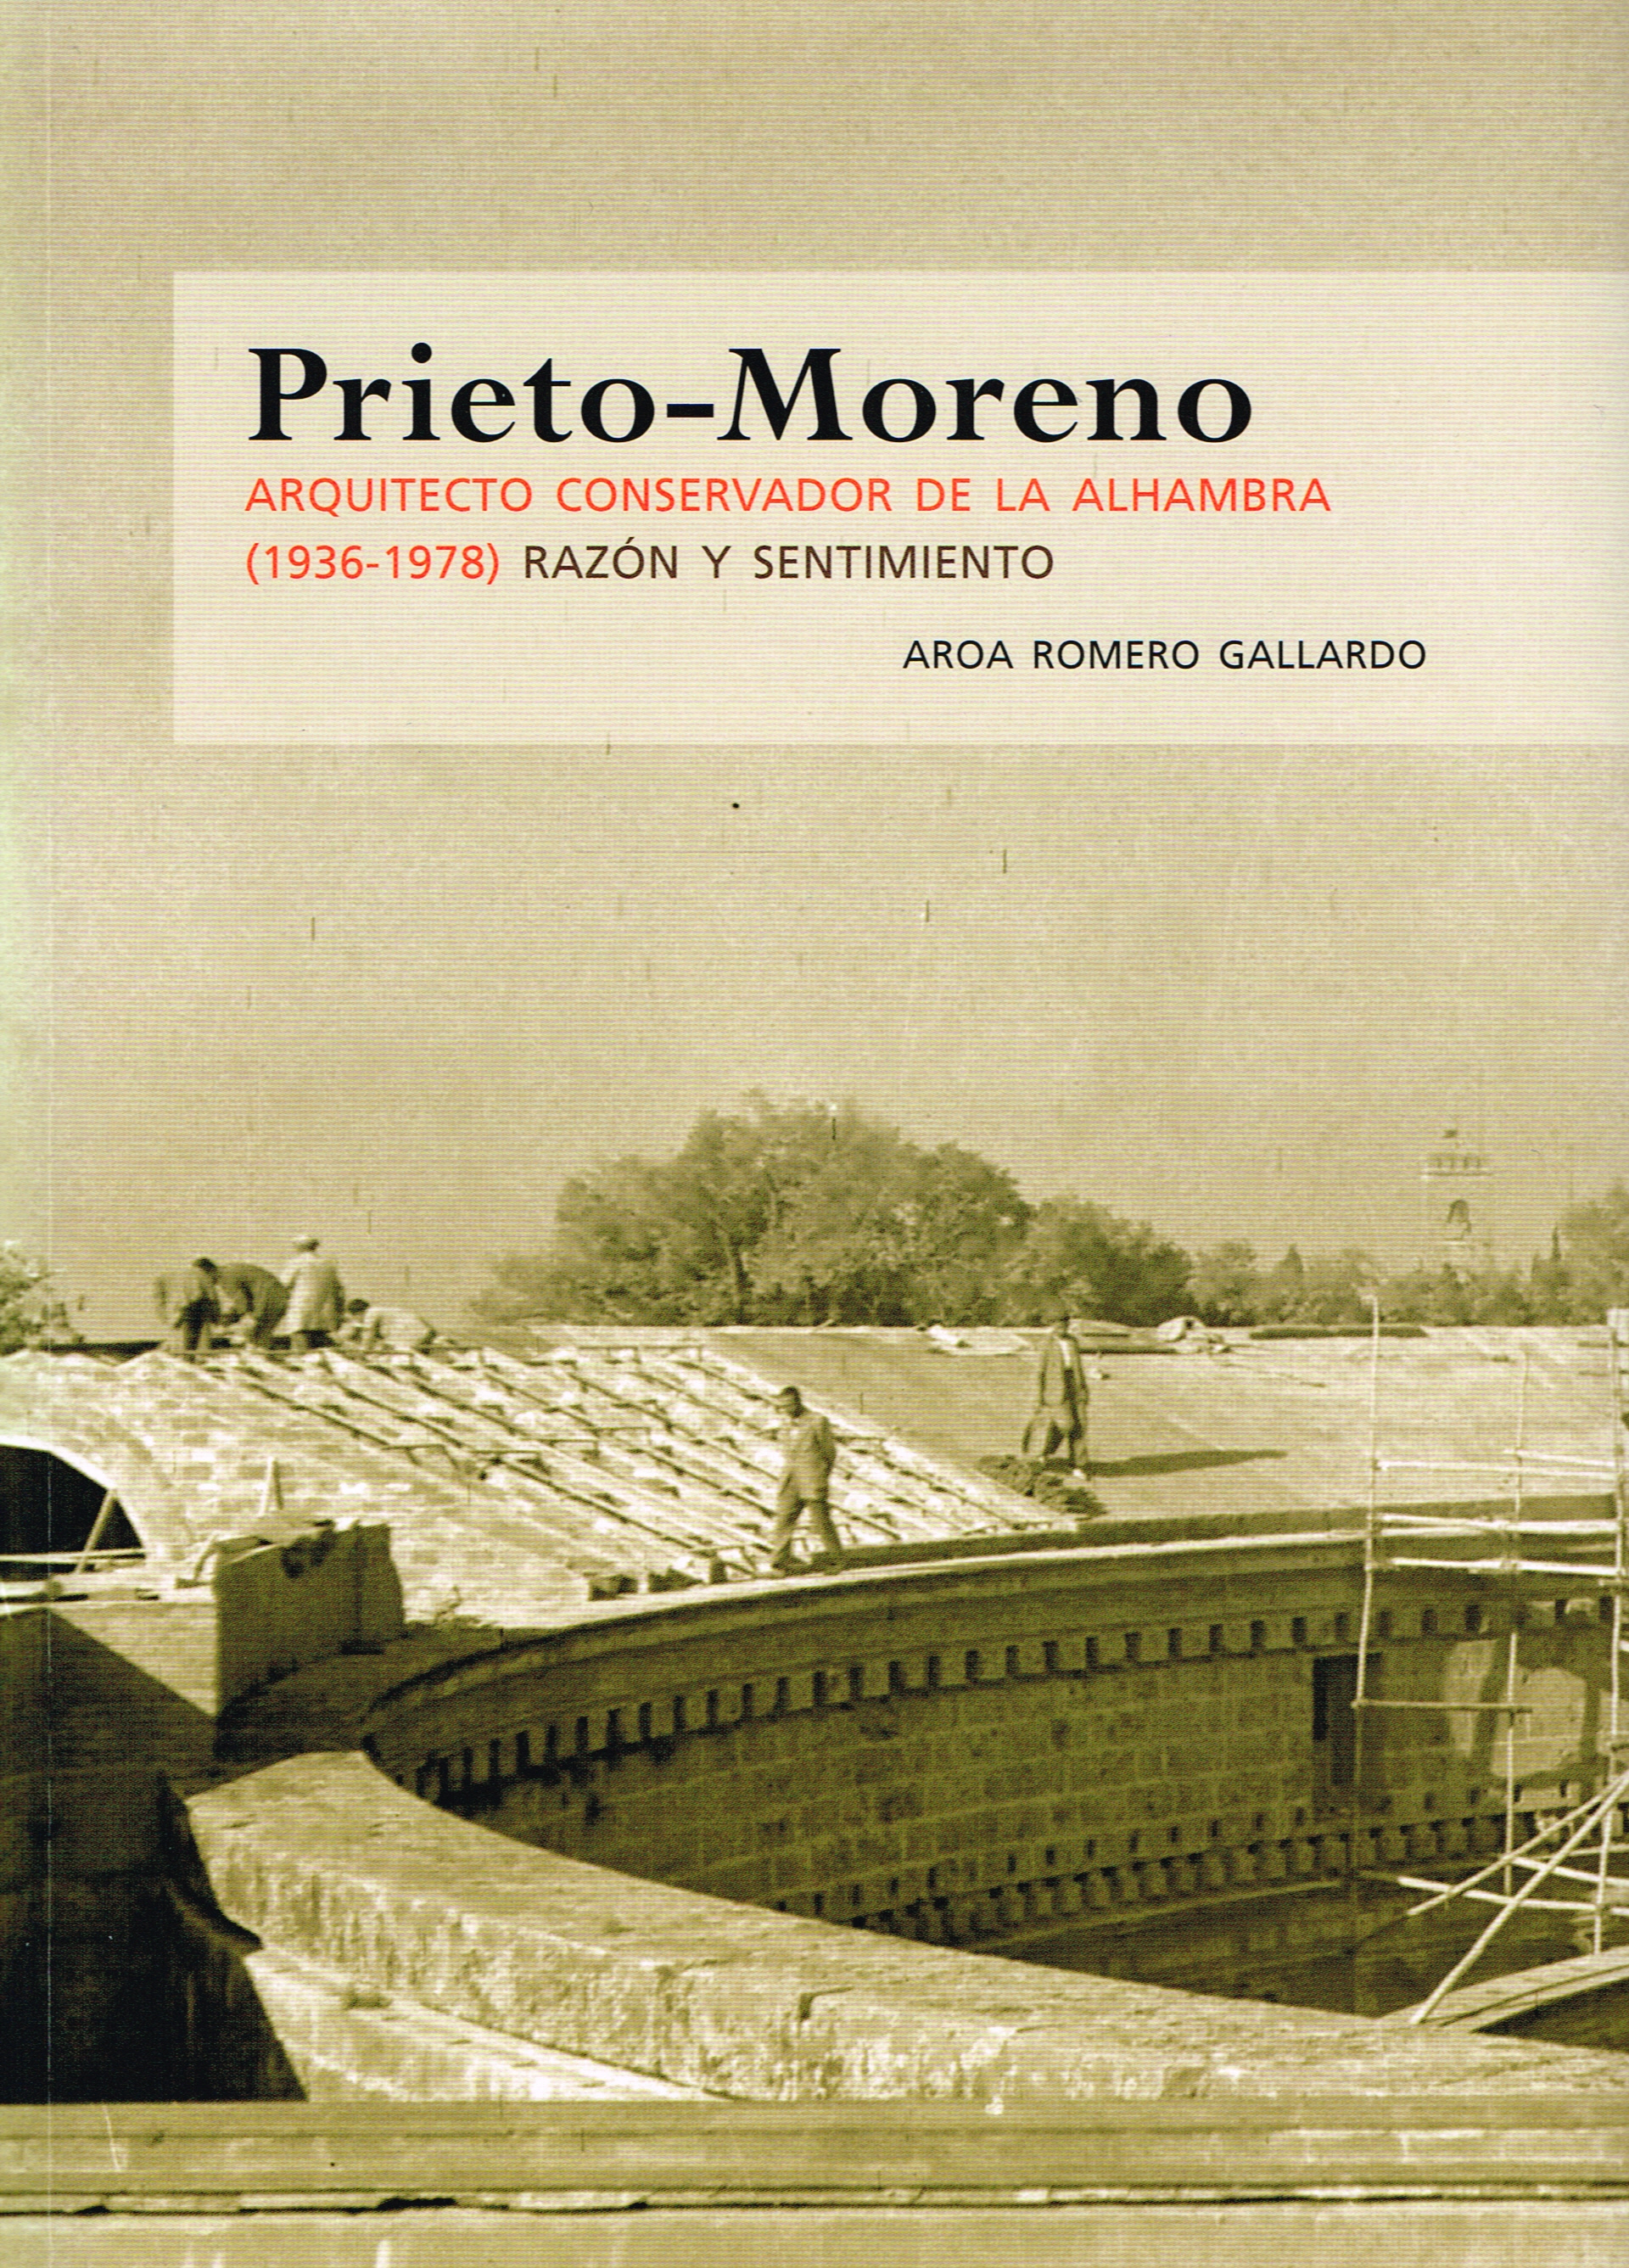 Prieto-Moreno. Arquitecto Conservador de la Alhambra (1936-1978). Razón y sentimiento